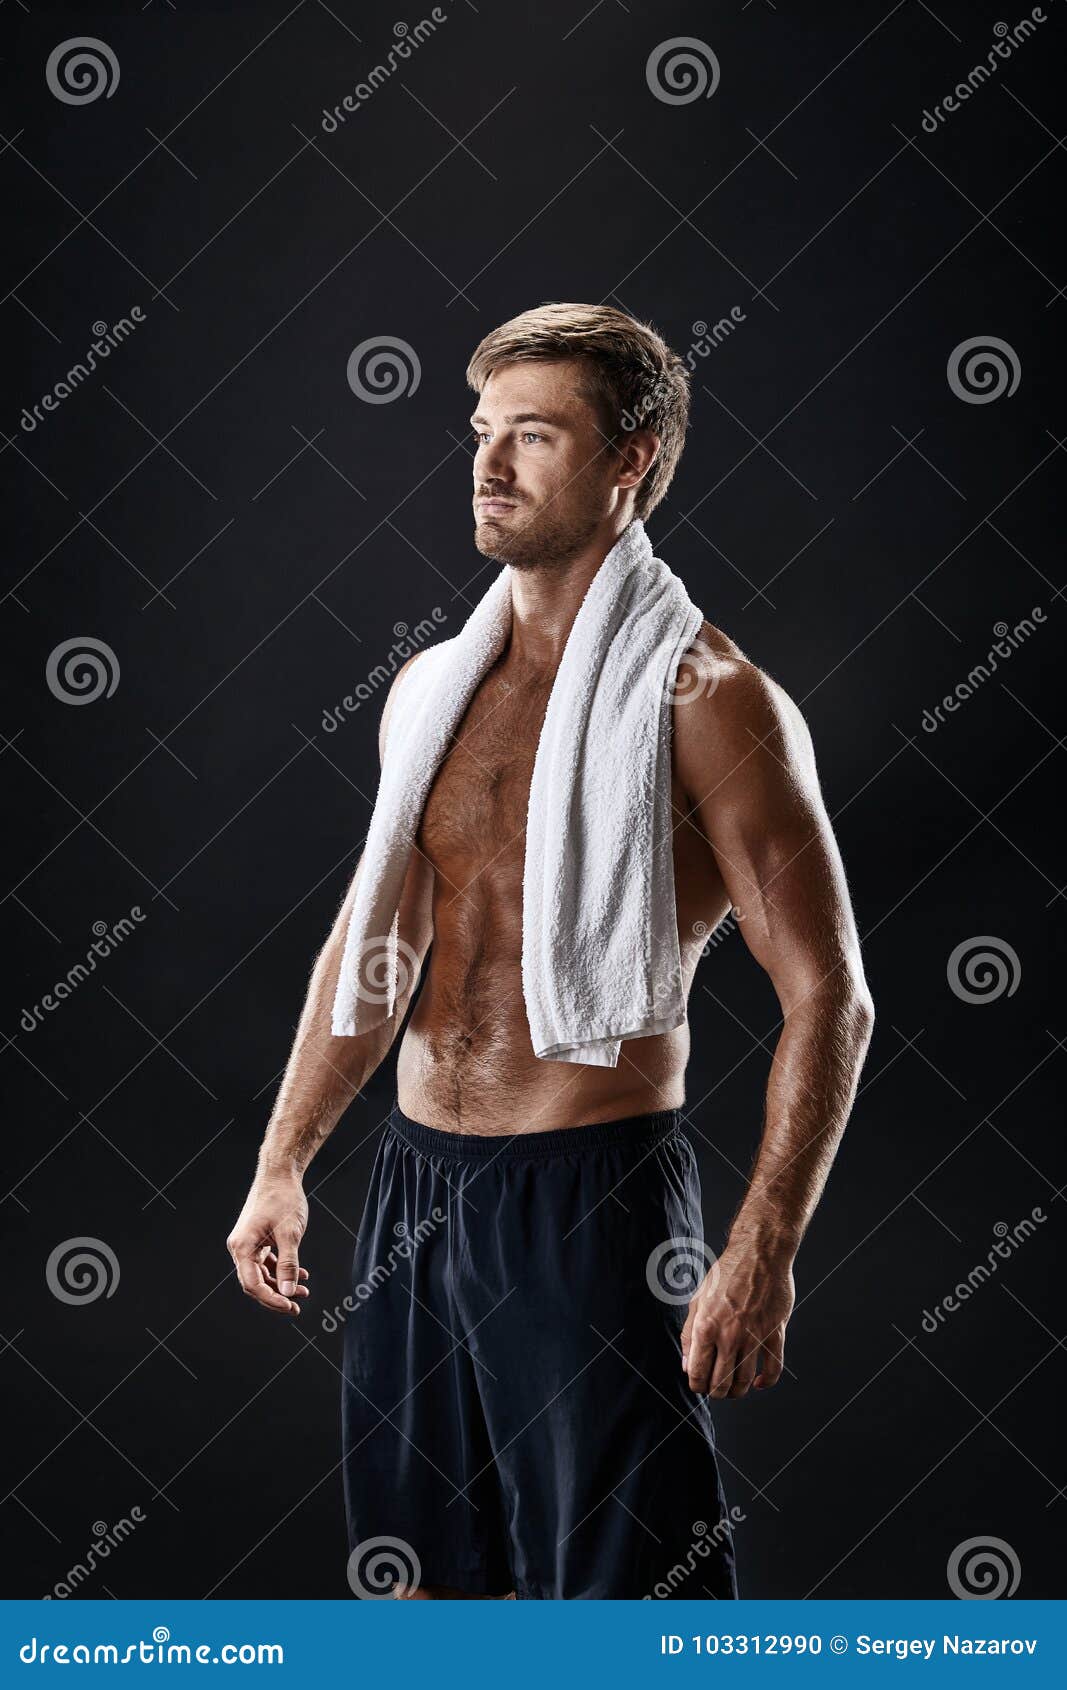 Полотенце на шею. Мужик с полотенцем на плече. Полотенце на плечах. Мужчина в полотенце. Парень с полотенцем на плечах.